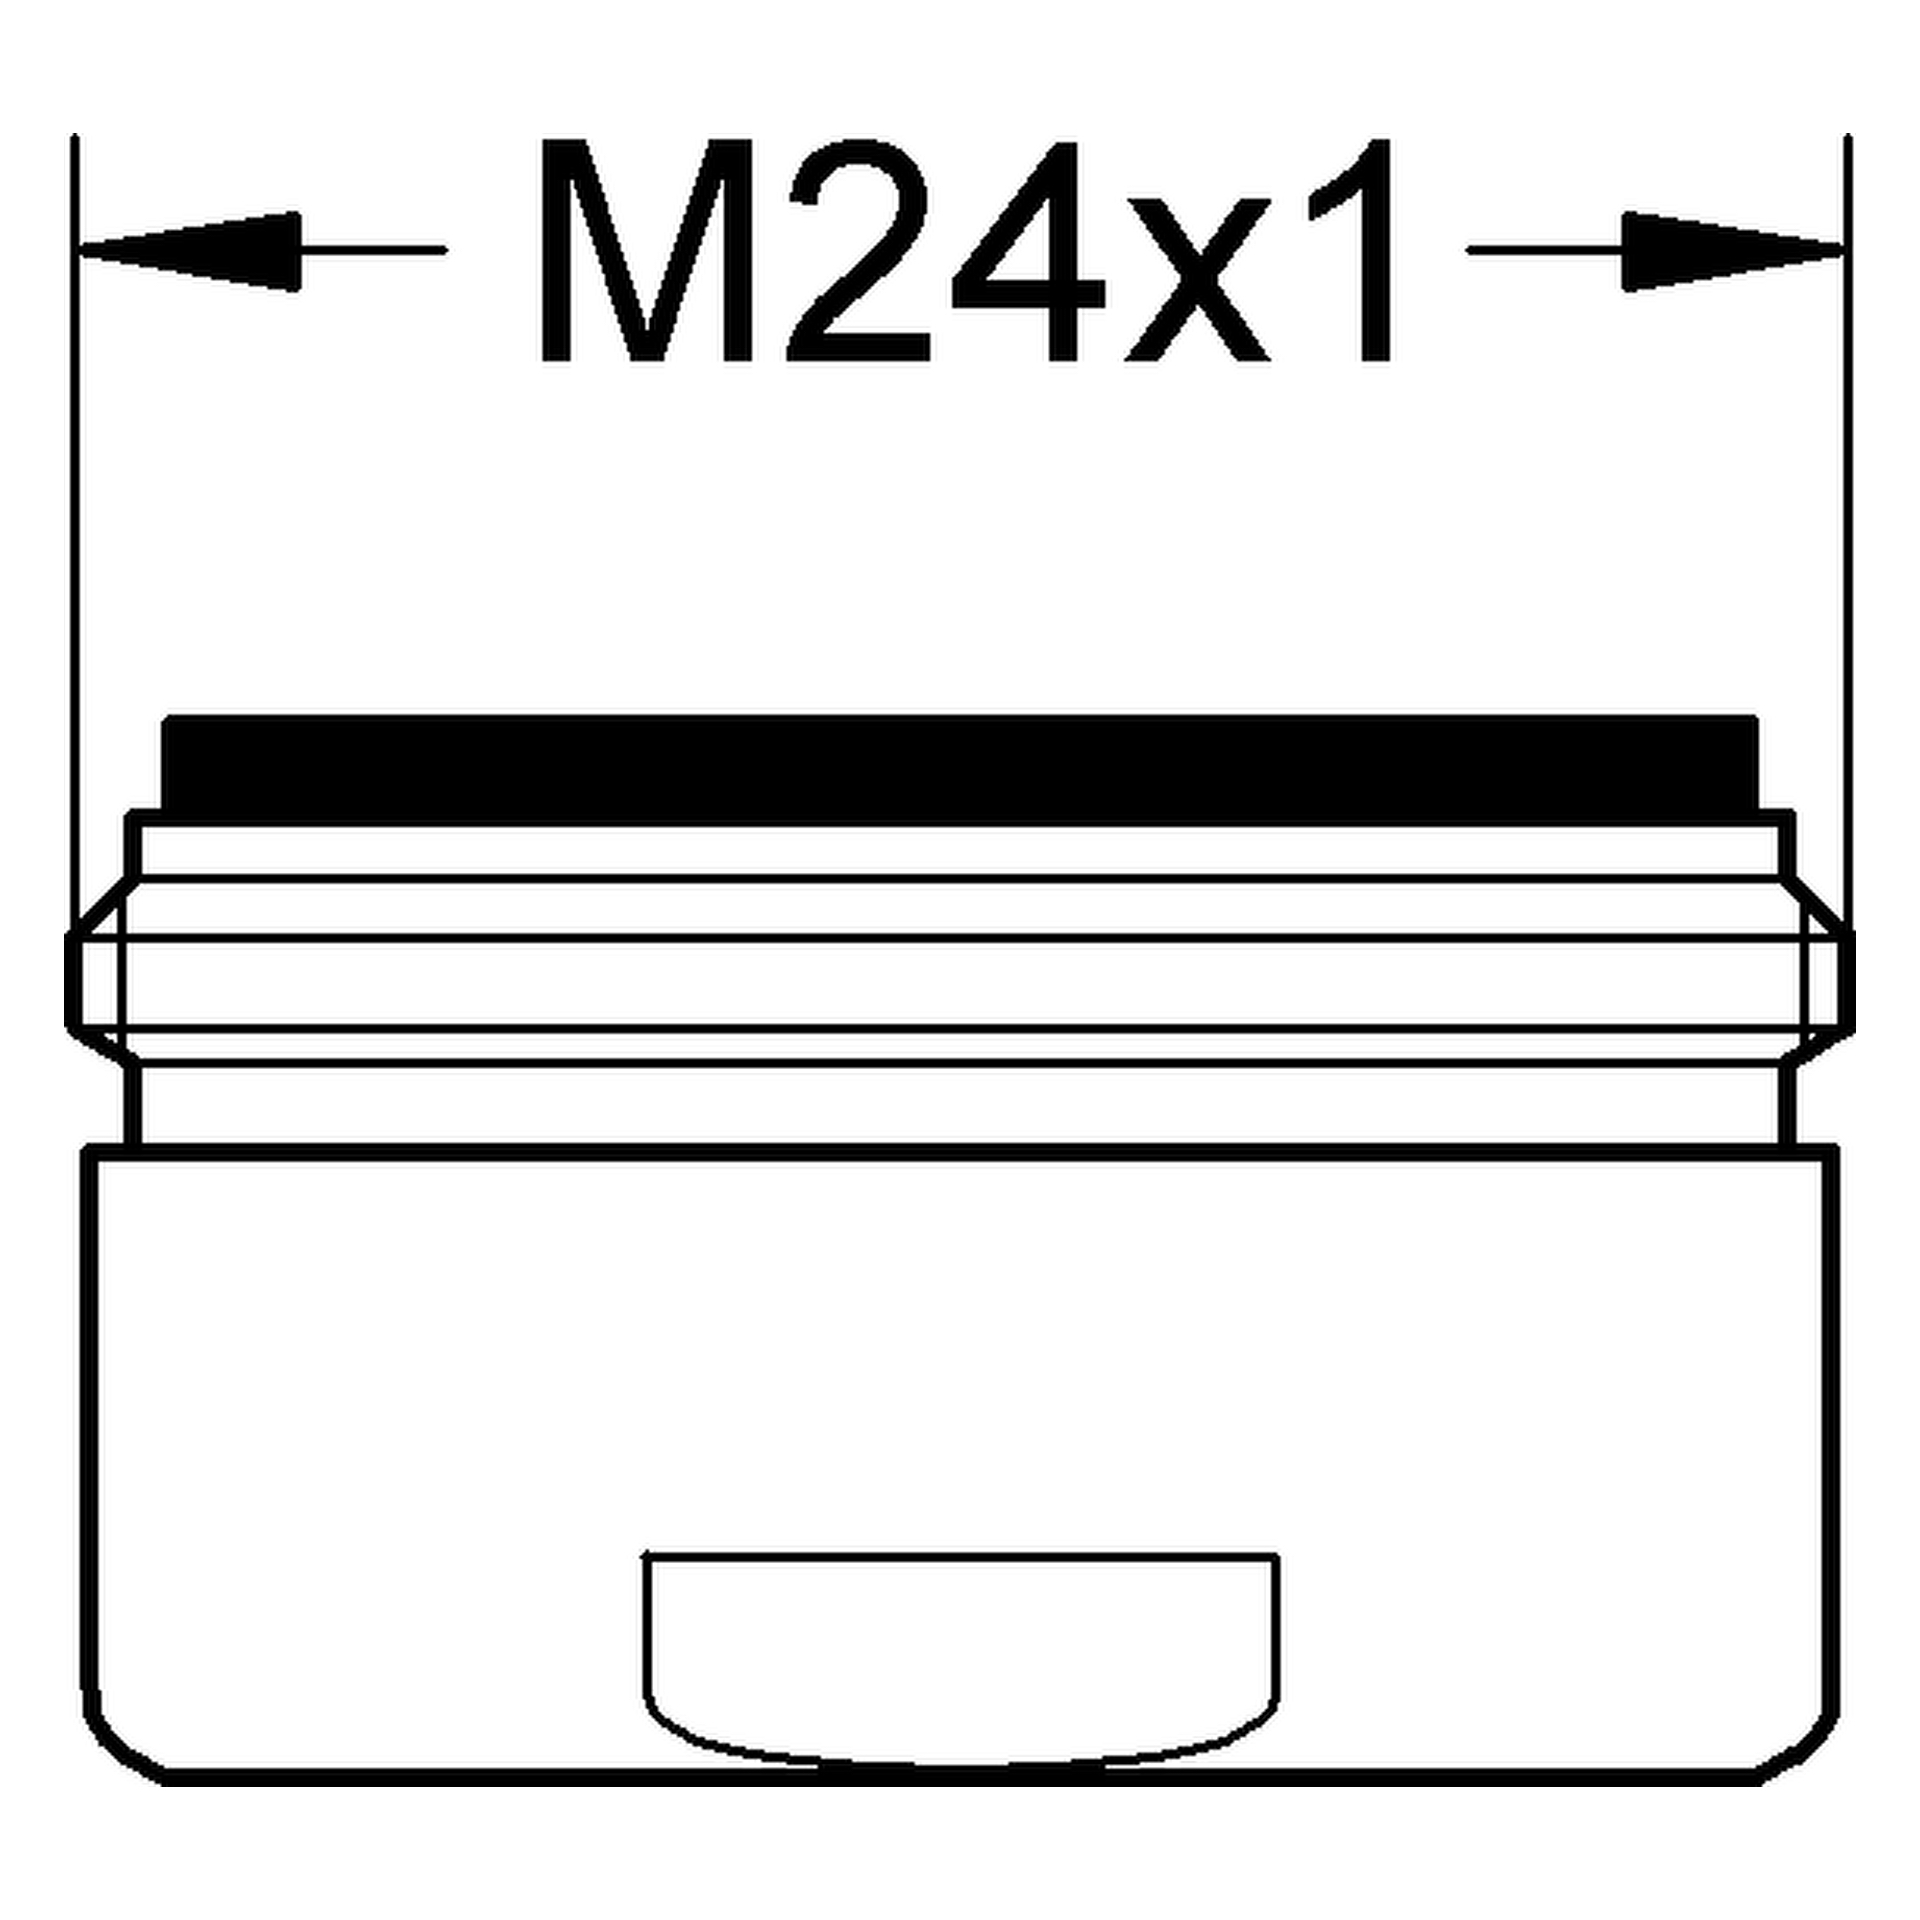 Mousseur 13961, Außengewinde, M 24 × 1, Durchflussklasse: B, 25,2 l/min bei 3 bar, chrom